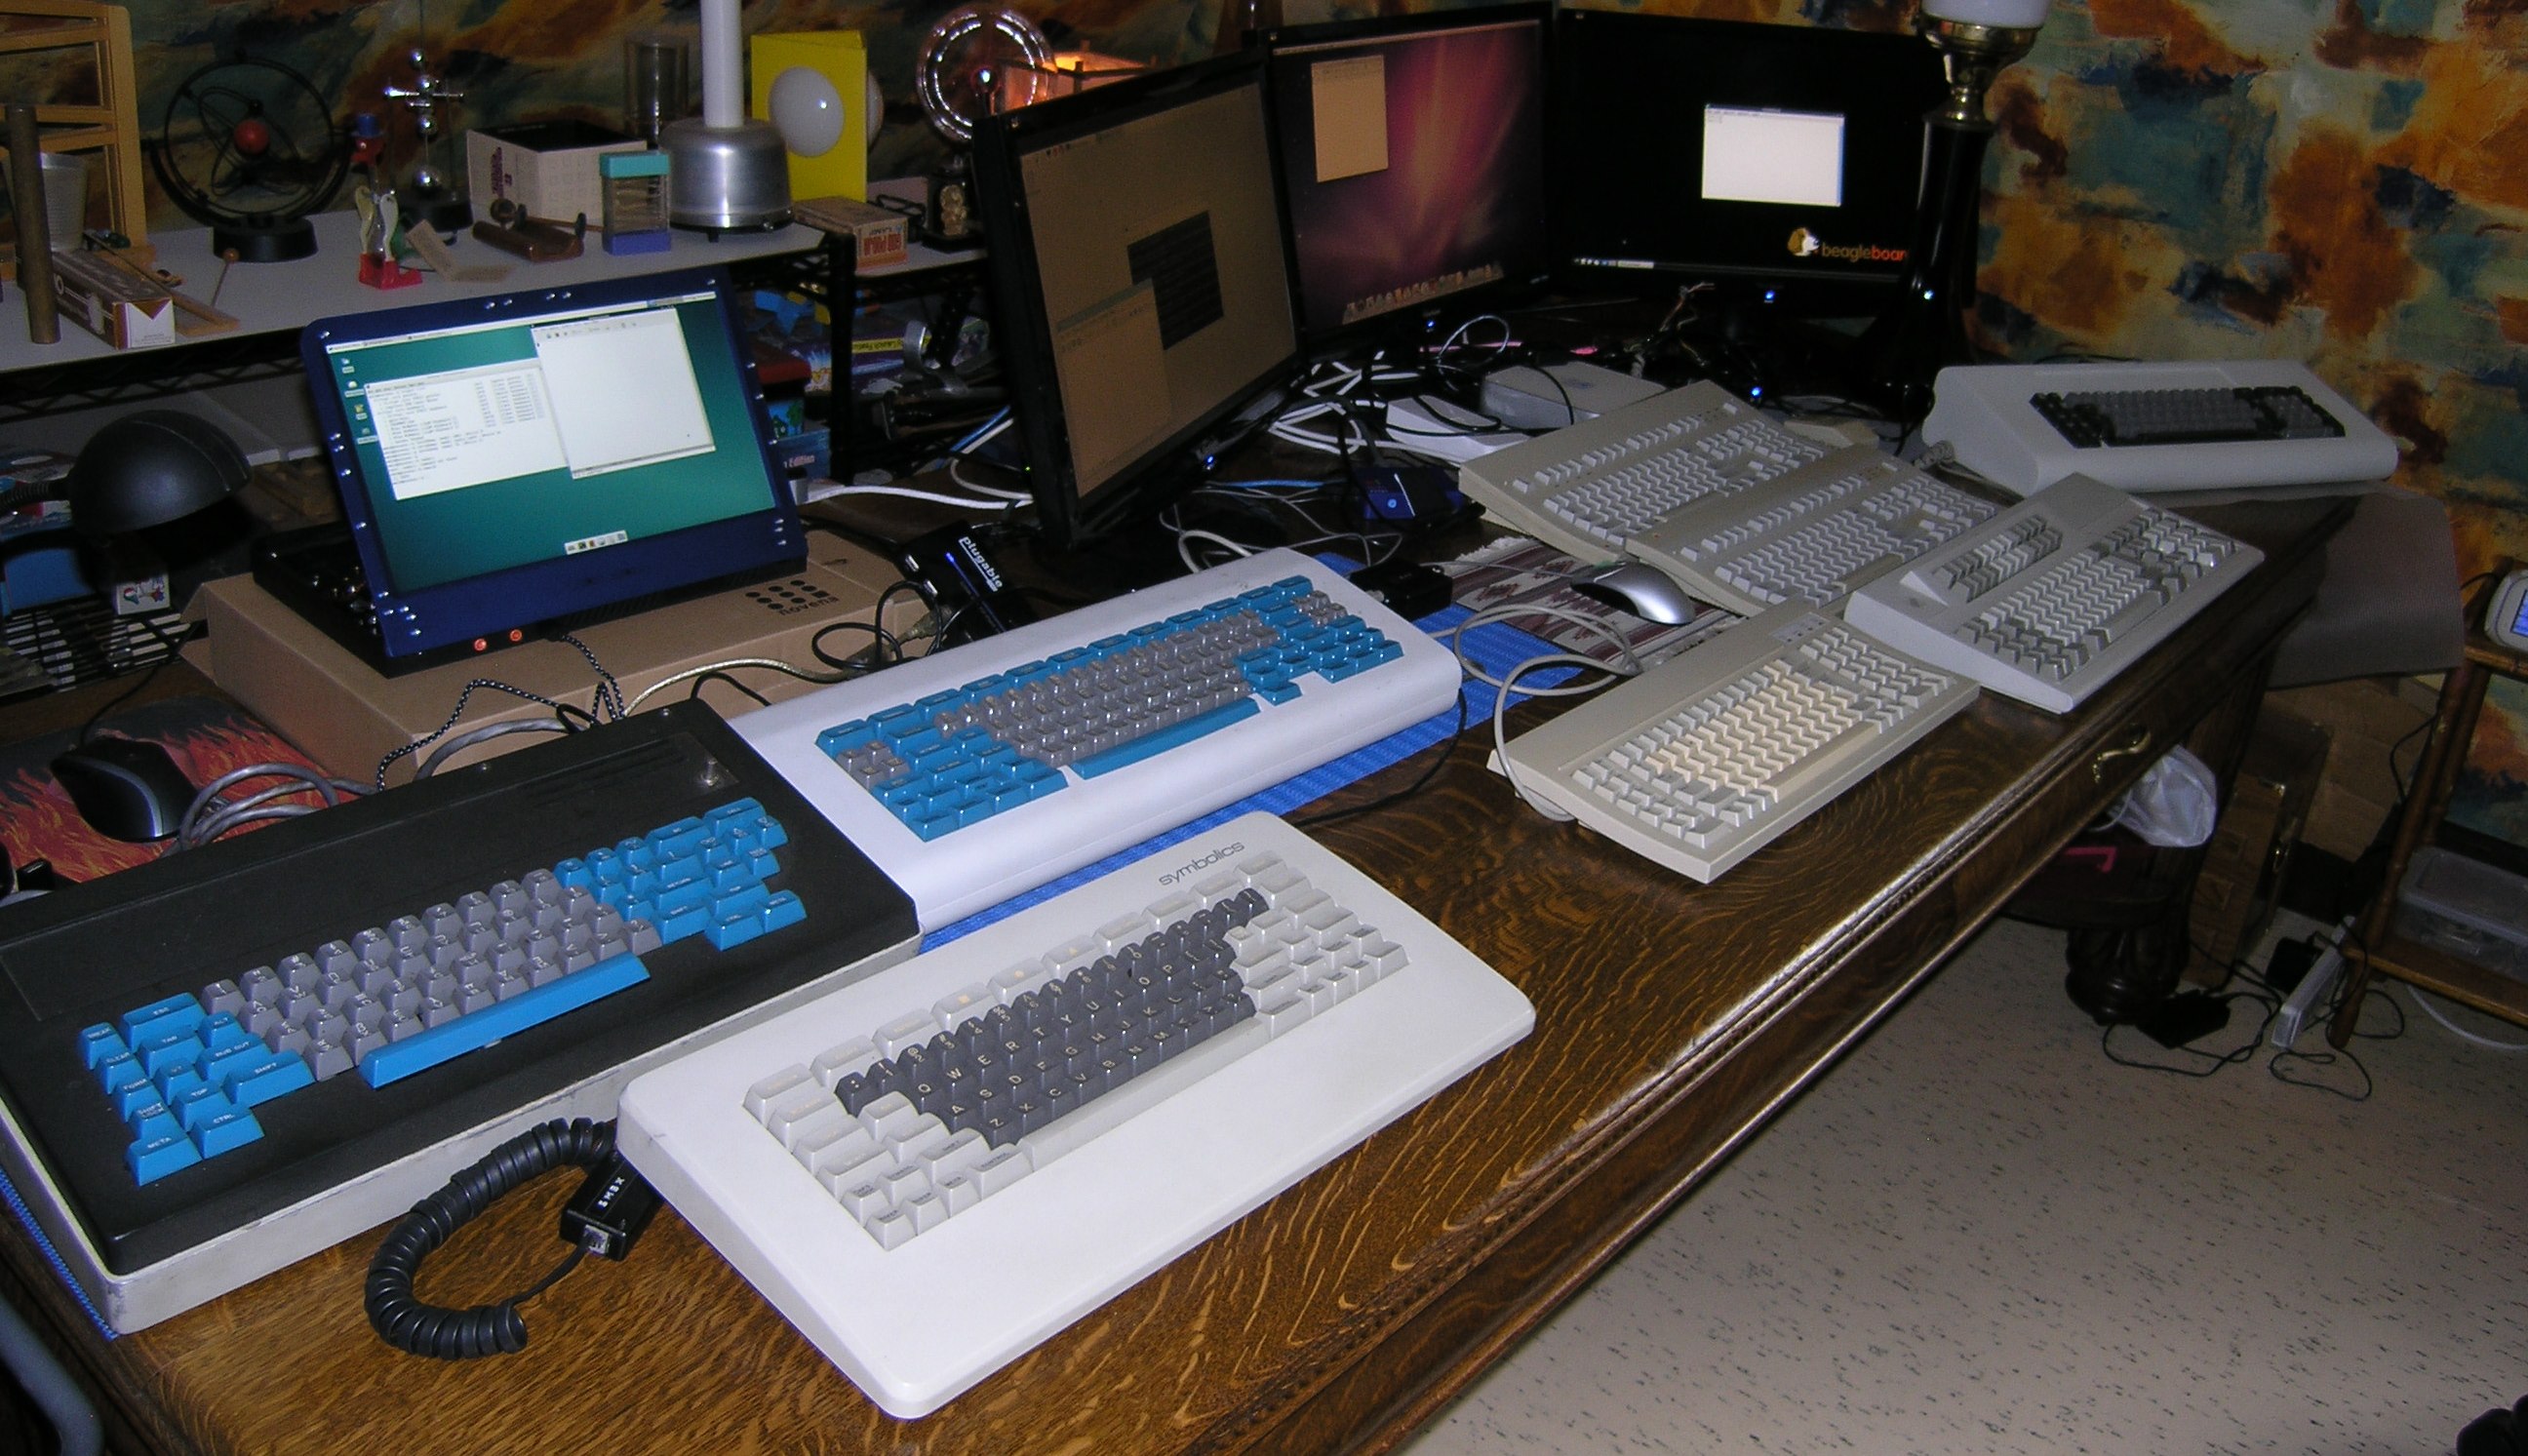 Some workstation keyboards